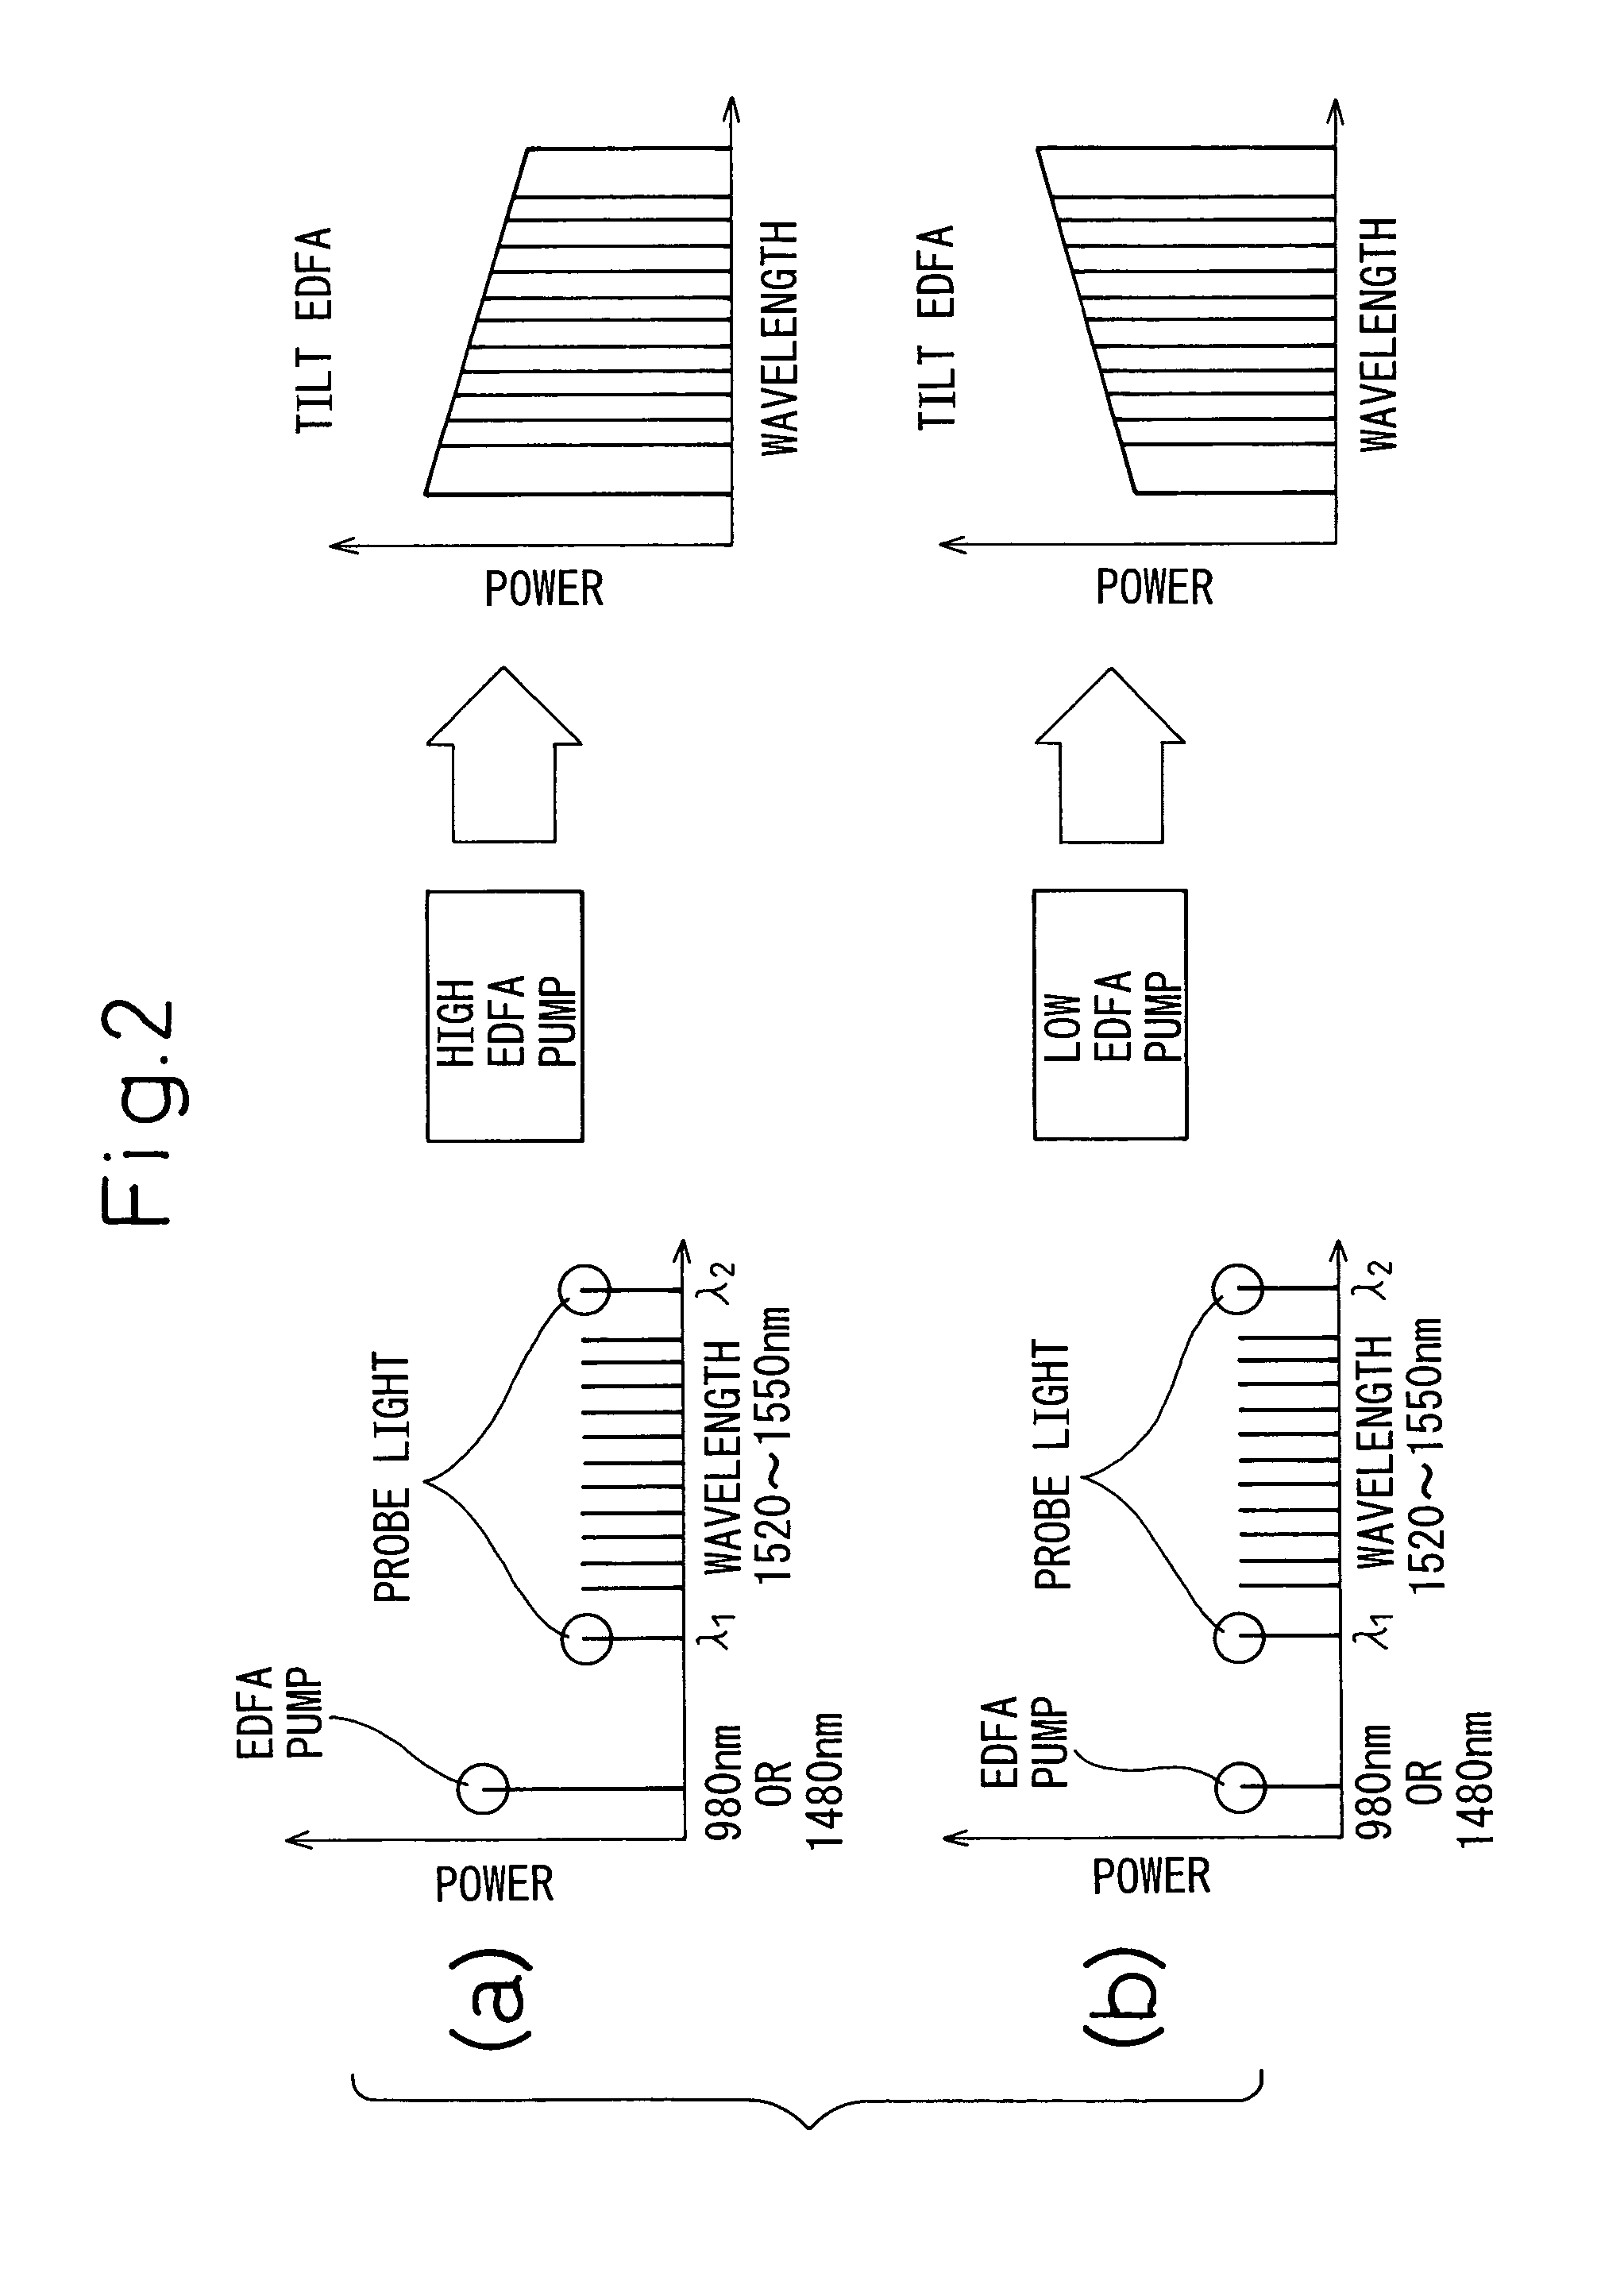 Multistage optical amplifier having tilt compensation feature